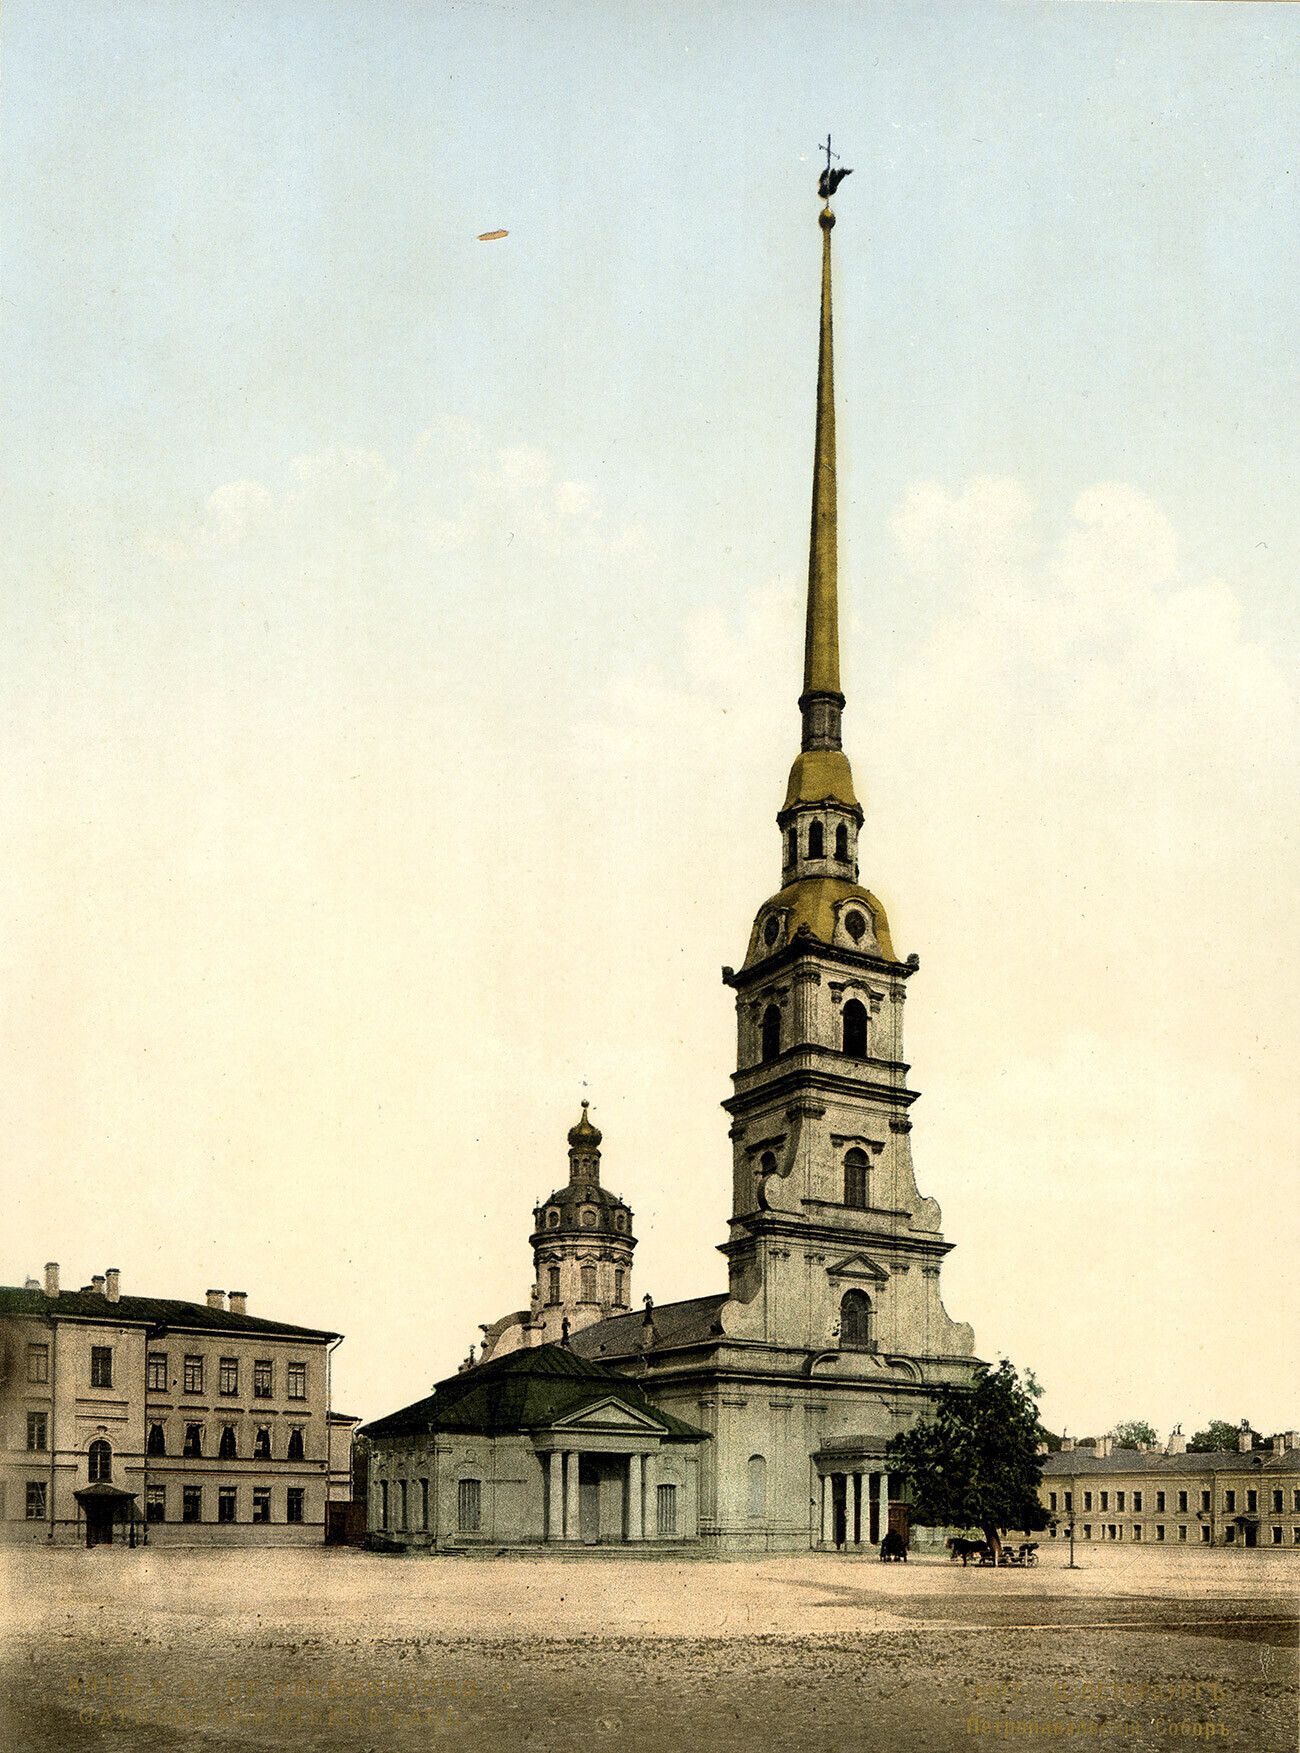 Петропавловскиот храм во Санкт Петербург

